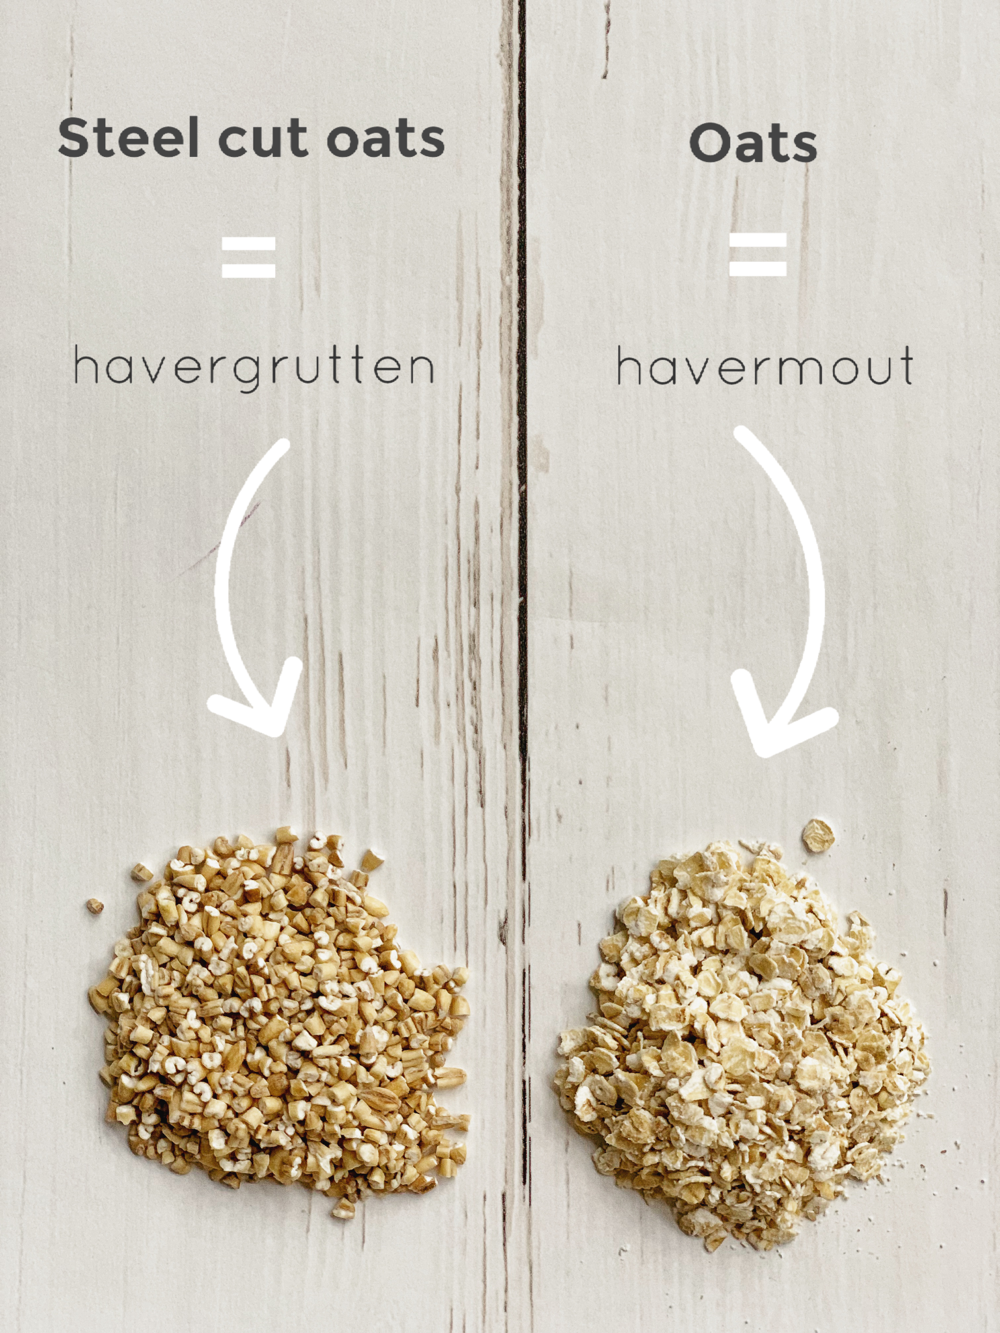 wat is het verschil tussen steel cut oats en havermout